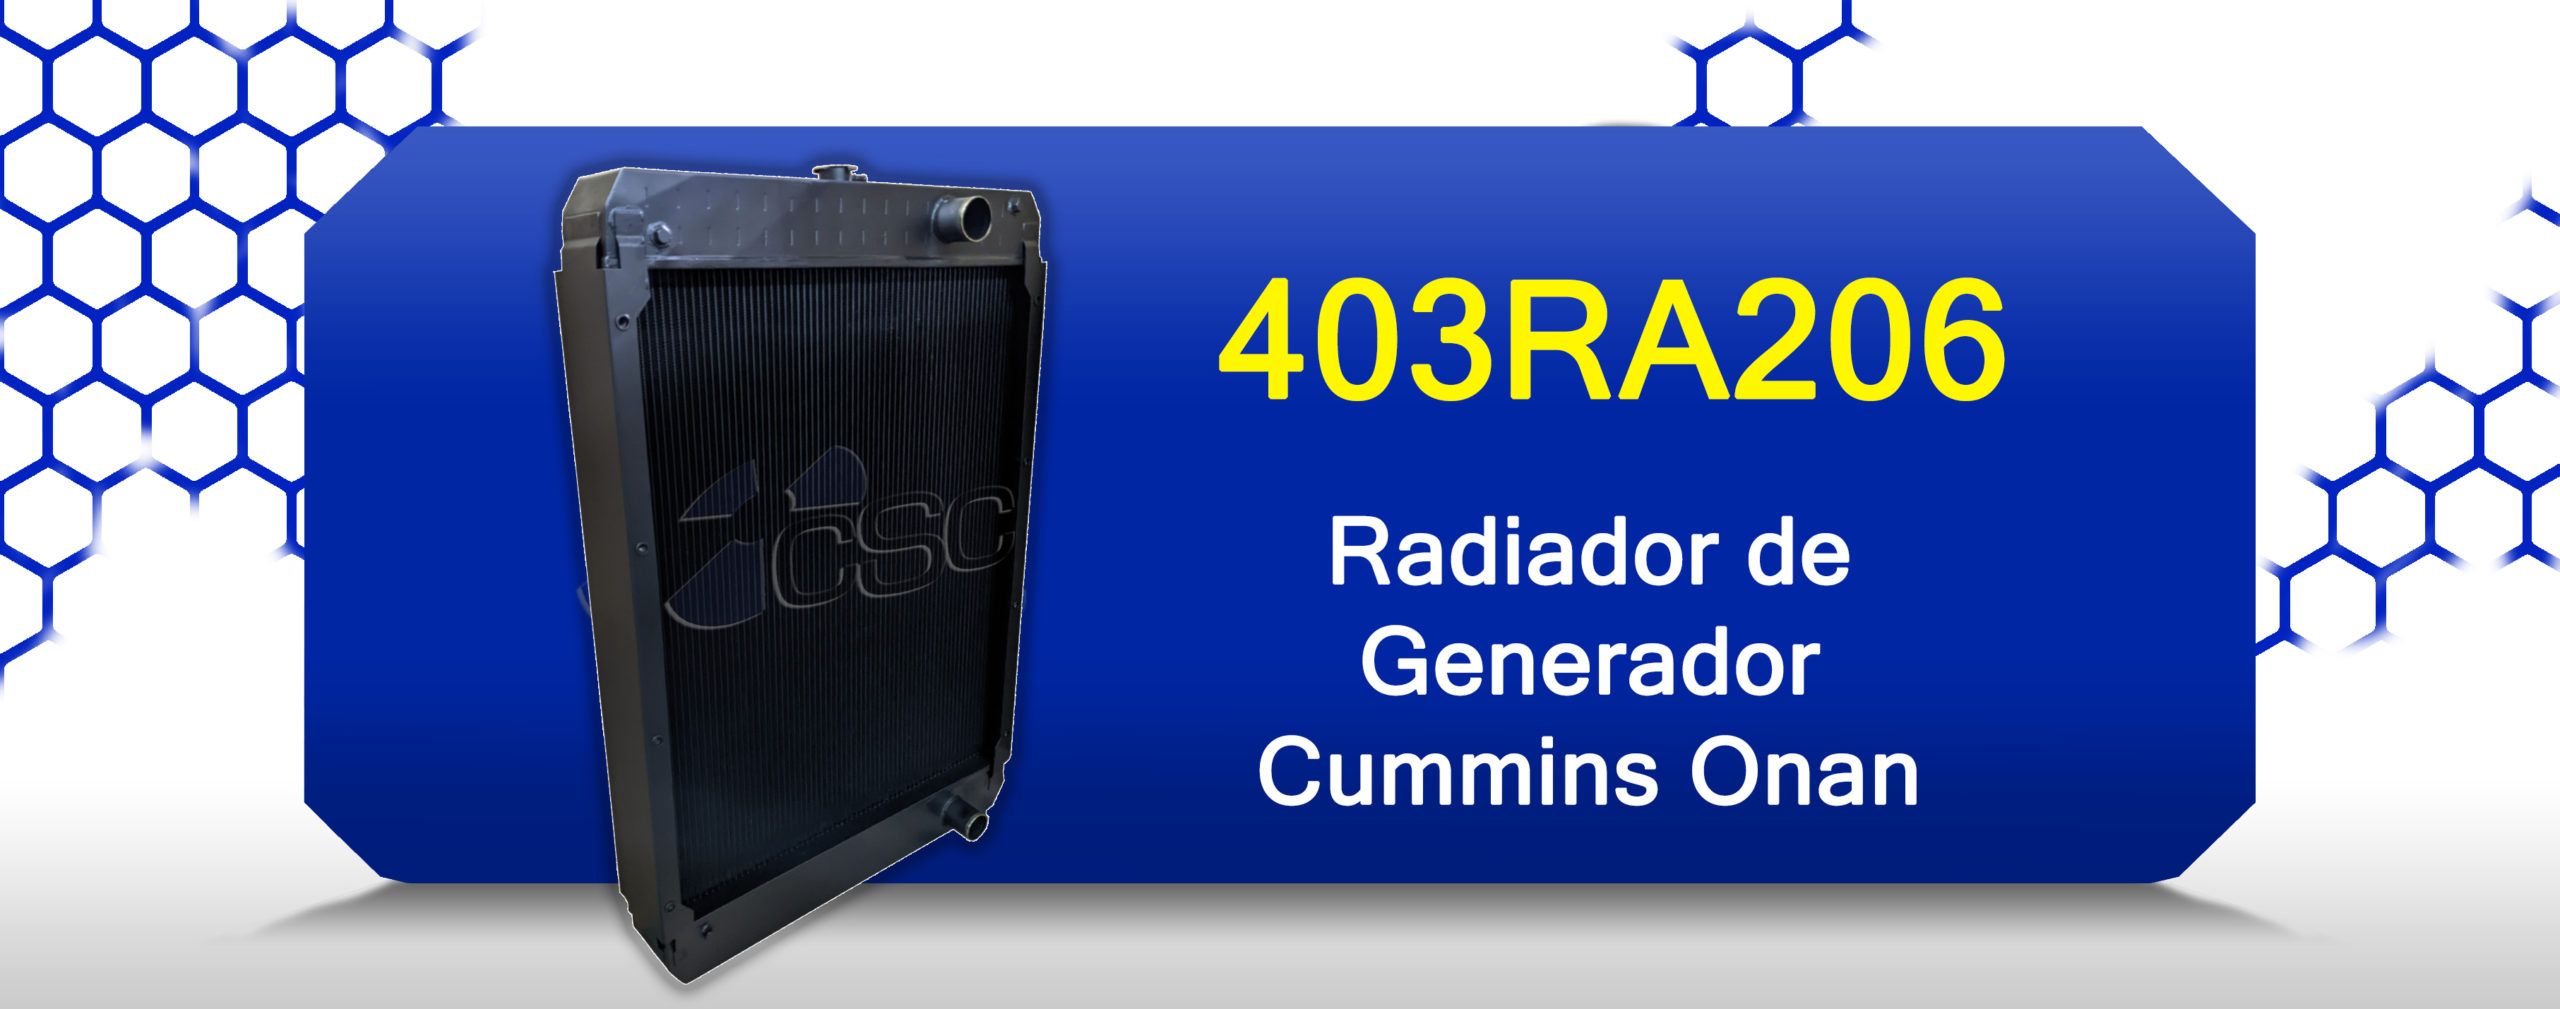 Radiador 403RA206 para generador Cummins Onan de 150kw